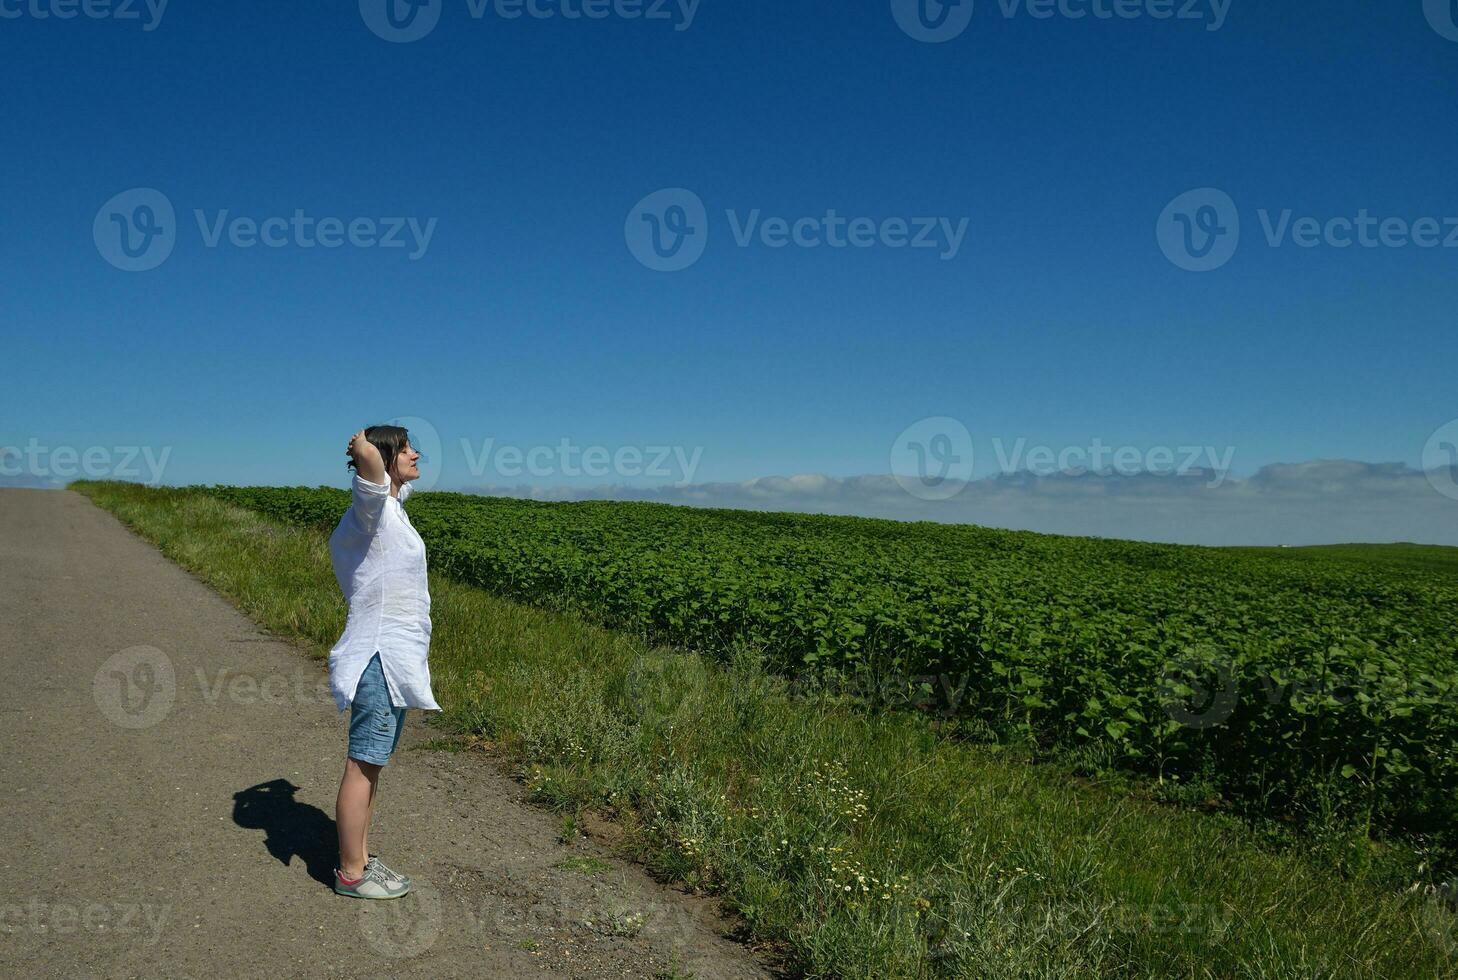 junge glückliche Frau im grünen Feld foto